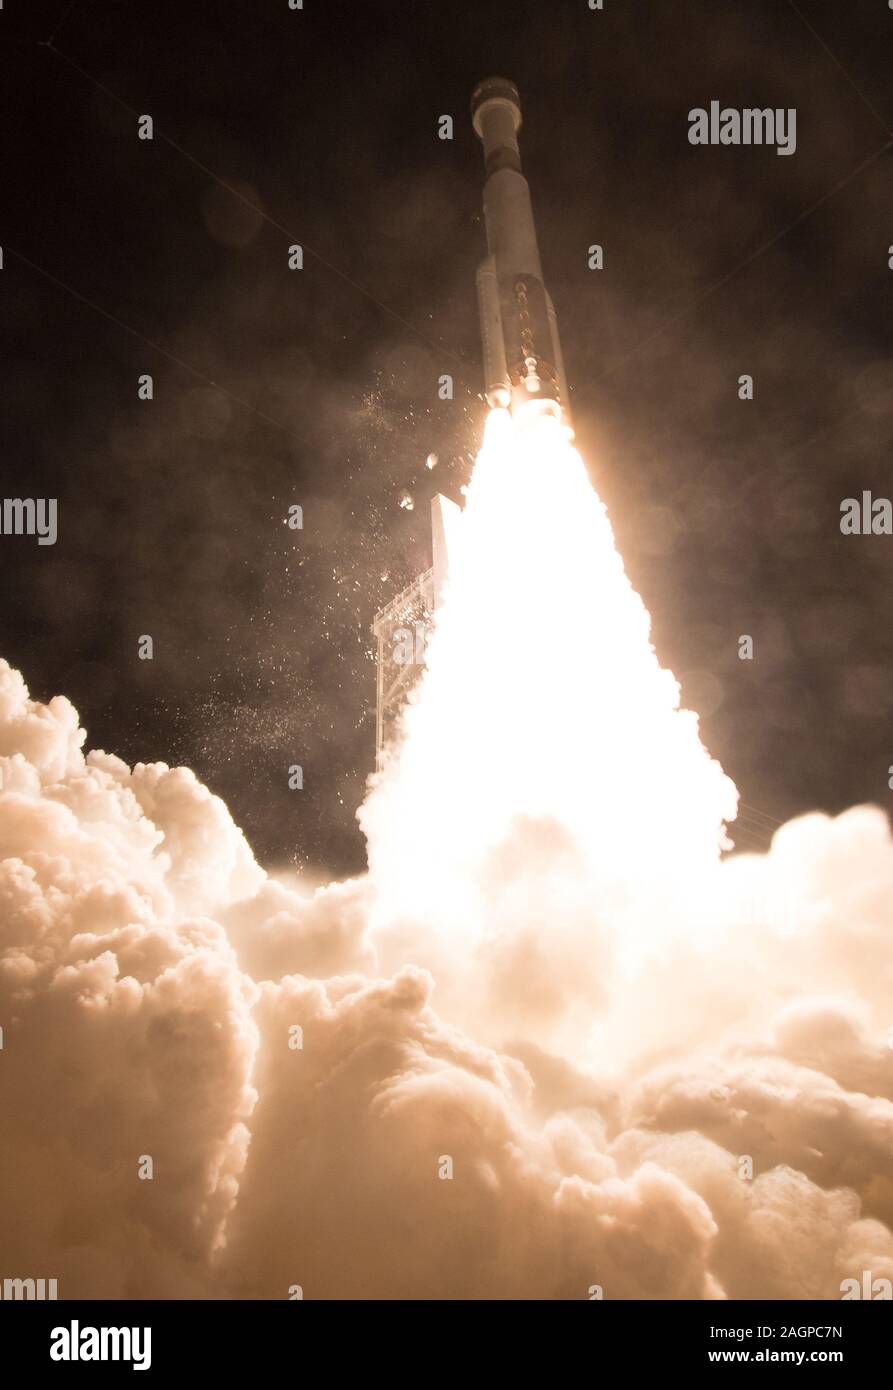 Cape Canaveral, Stati Uniti. Xx Dec, 2019. Un regno lancio Alleanza Atlas V a razzo con Boeing CST-100 Starliner lanci spaziali from Space Launch Complex 41, il 20 dicembre 2019, alla Cape Canaveral Air Force Station in Florida. L'orbitale uncrewed volo di prova lanciato a 6:36 a.m. EST ed è Starliner da nubile della missione alla stazione spaziale internazionale per la NASA commerciale del programma dell'equipaggio. La missione servirà come un test end-to-end della funzionalità del sistema.Foto NASA da Joel Kowsky/UPI Credito: UPI/Alamy Live News Foto Stock